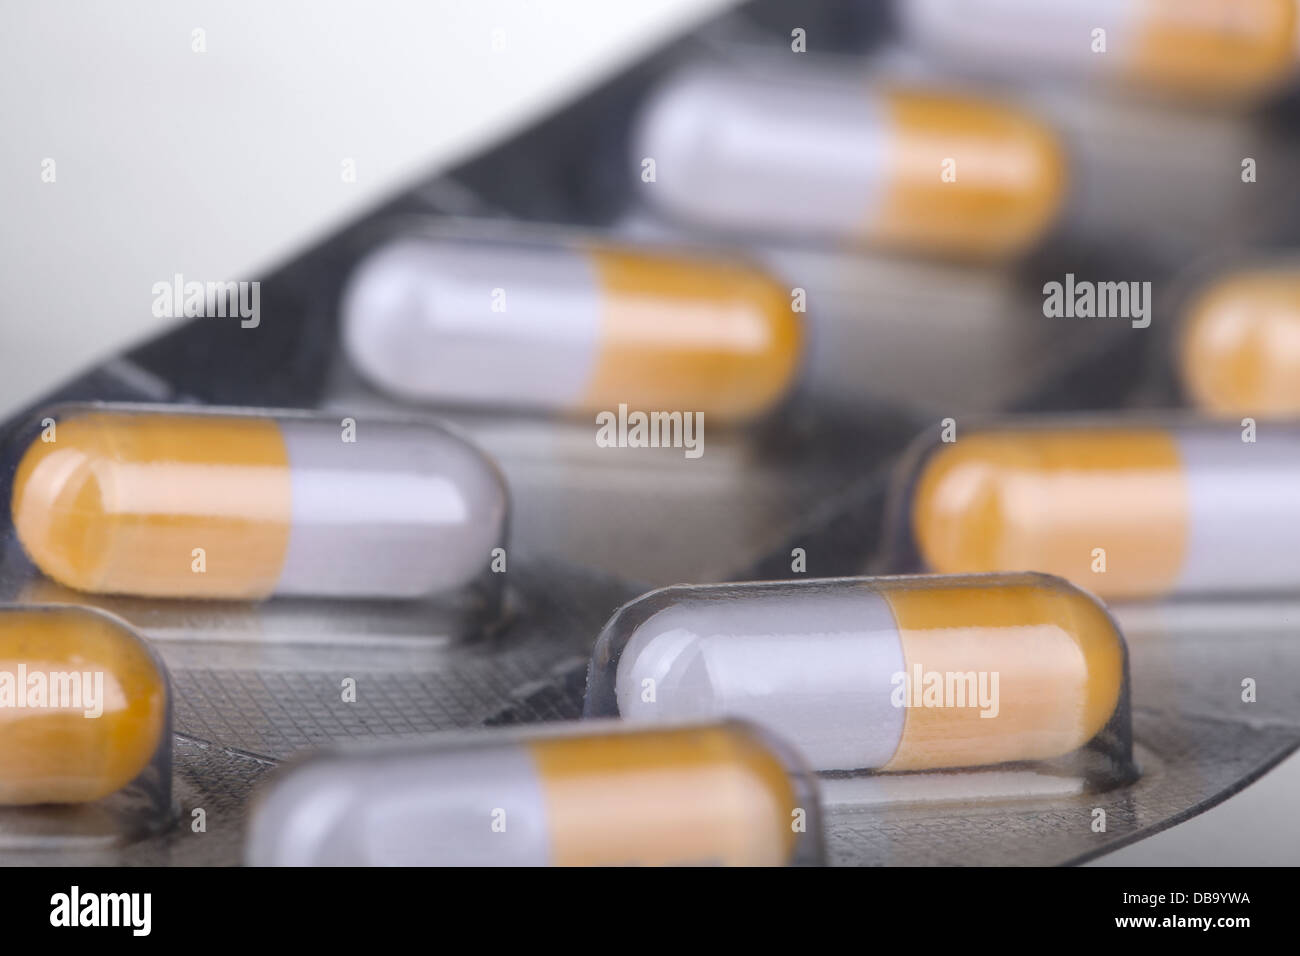 Dettaglio Closeup shot di compressa in pillole in blister, con una profondità di campo ridotta Foto Stock